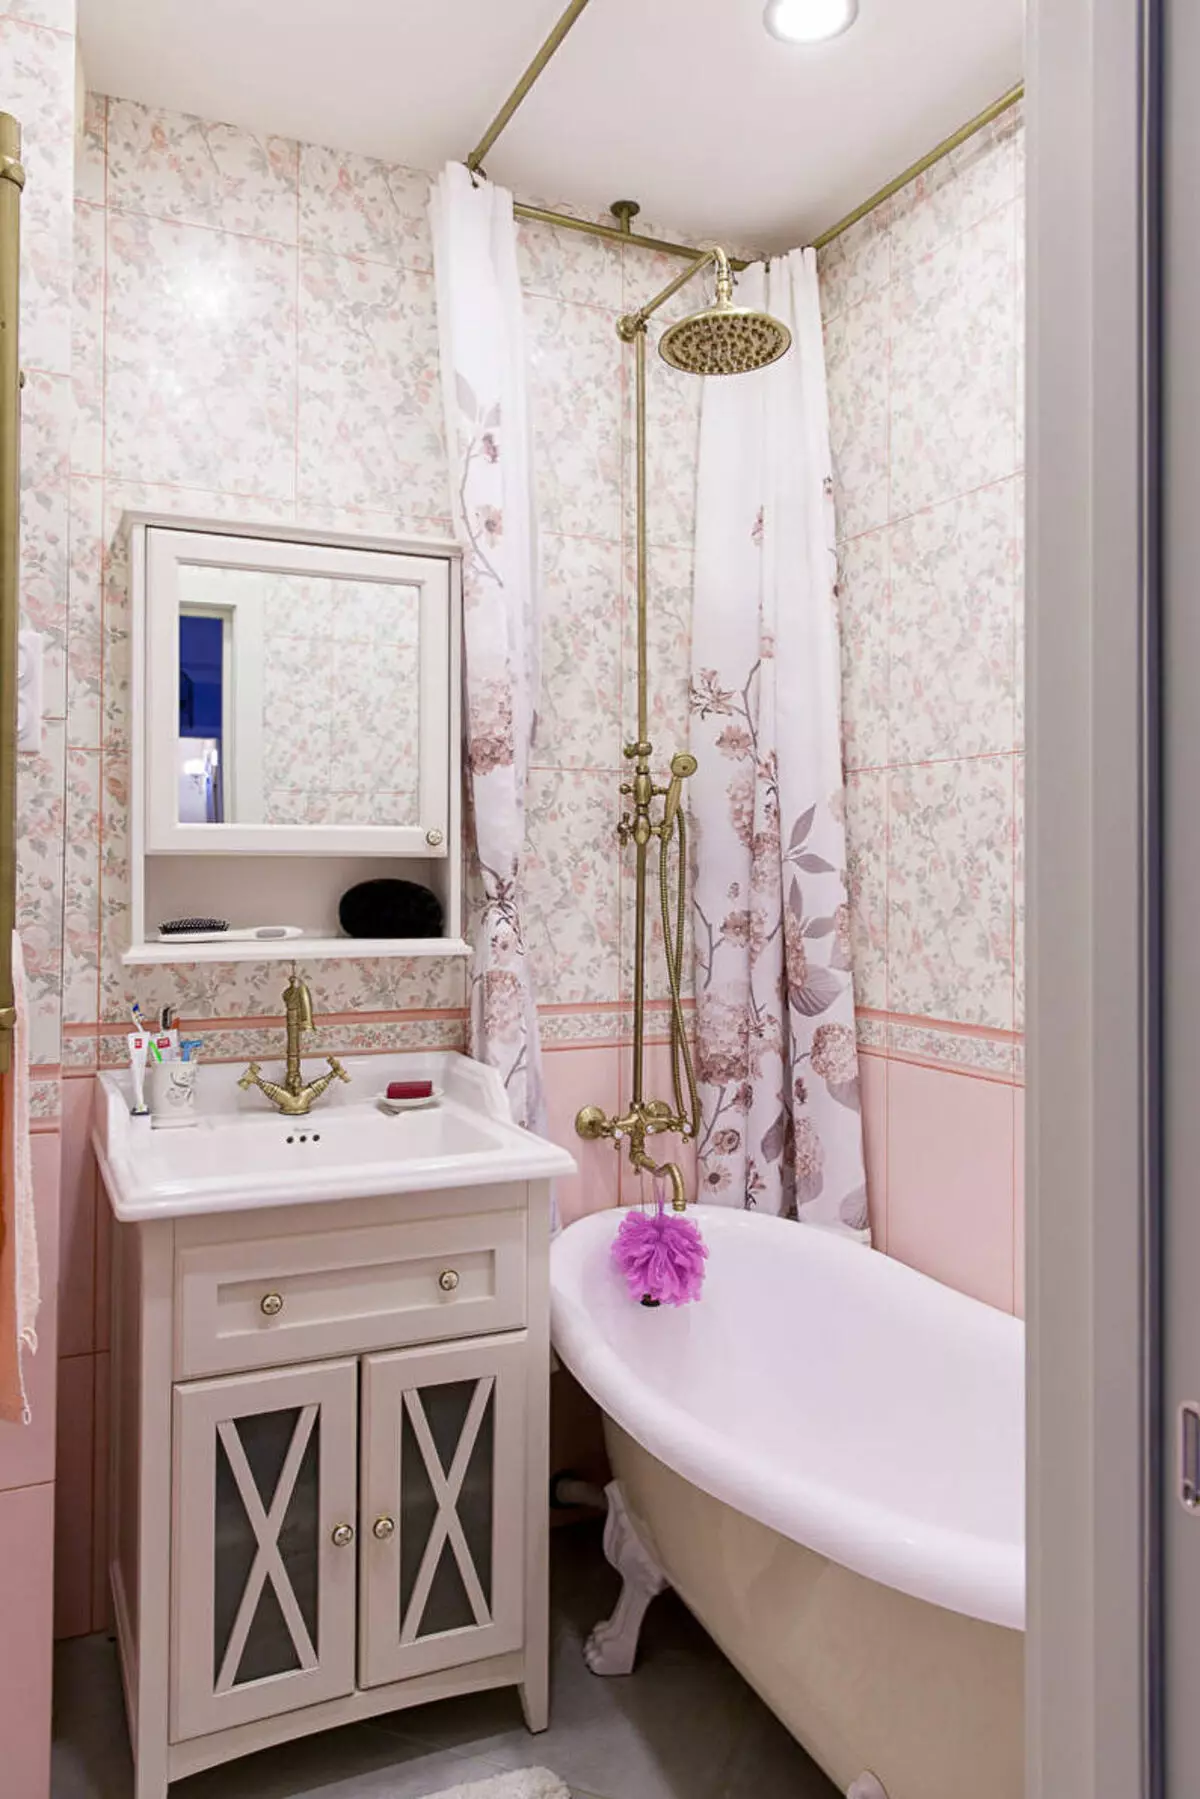 Фото небольшой ванной комнаты. Ванная в стиле Прованс 3кв.м. Ванные комнаты в стиле Прованс. Маленькая ванная комната. Интерьер ванной комнаты в стиле Прованс.